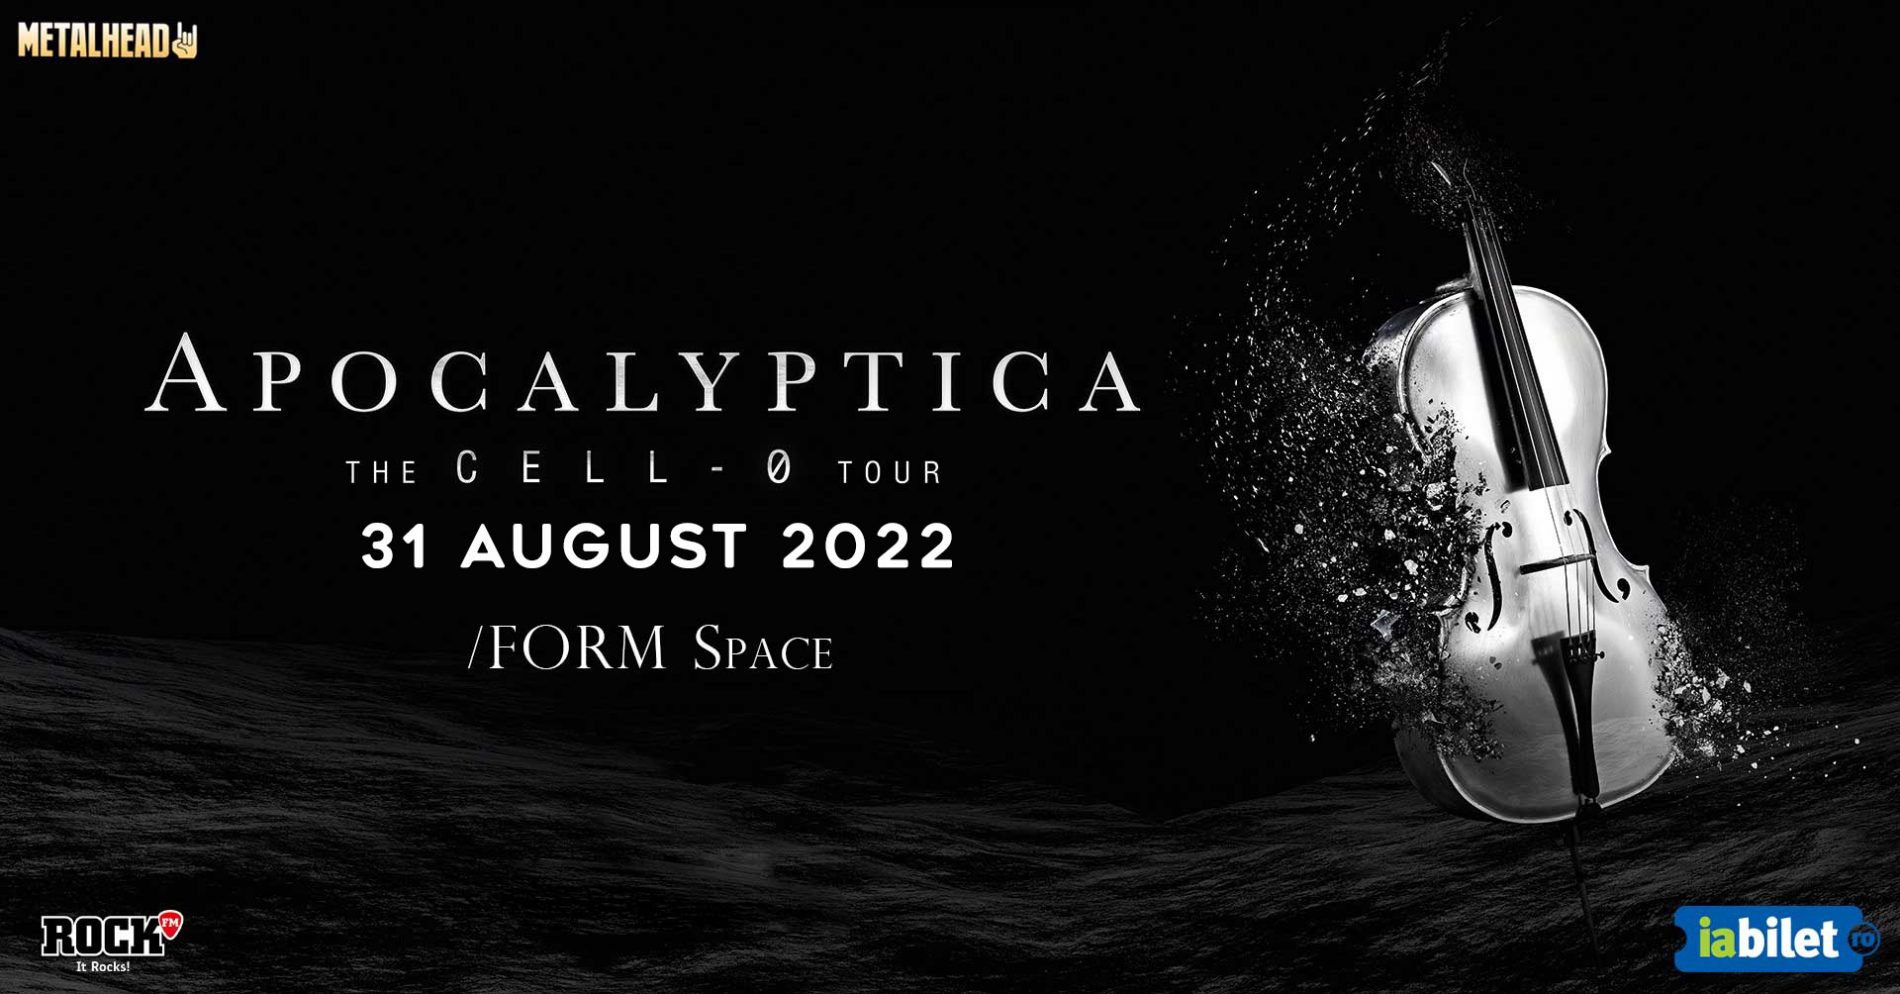 Concertele Apocalyptica din Cluj-Napoca și București se reprogramează